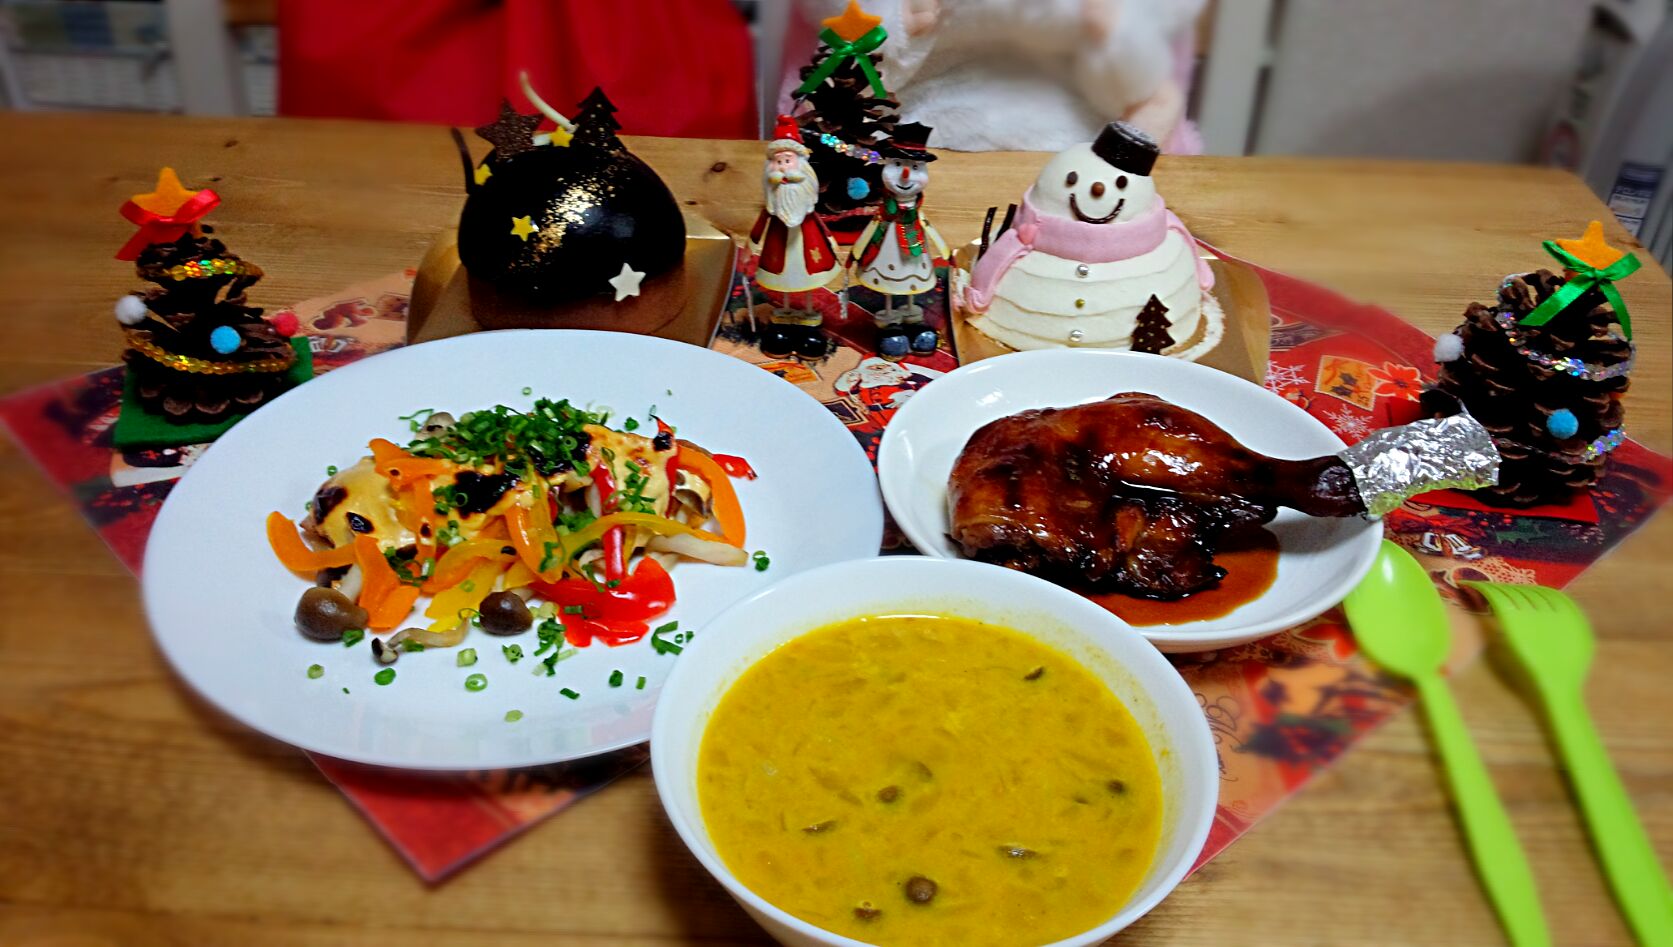 パパのクリスマス晩御飯☆彡

☆ローストチキン　☆秋鮭の味噌マヨ焼き　
☆カボチャのスープ　
☆銀のぶどうのケーキ